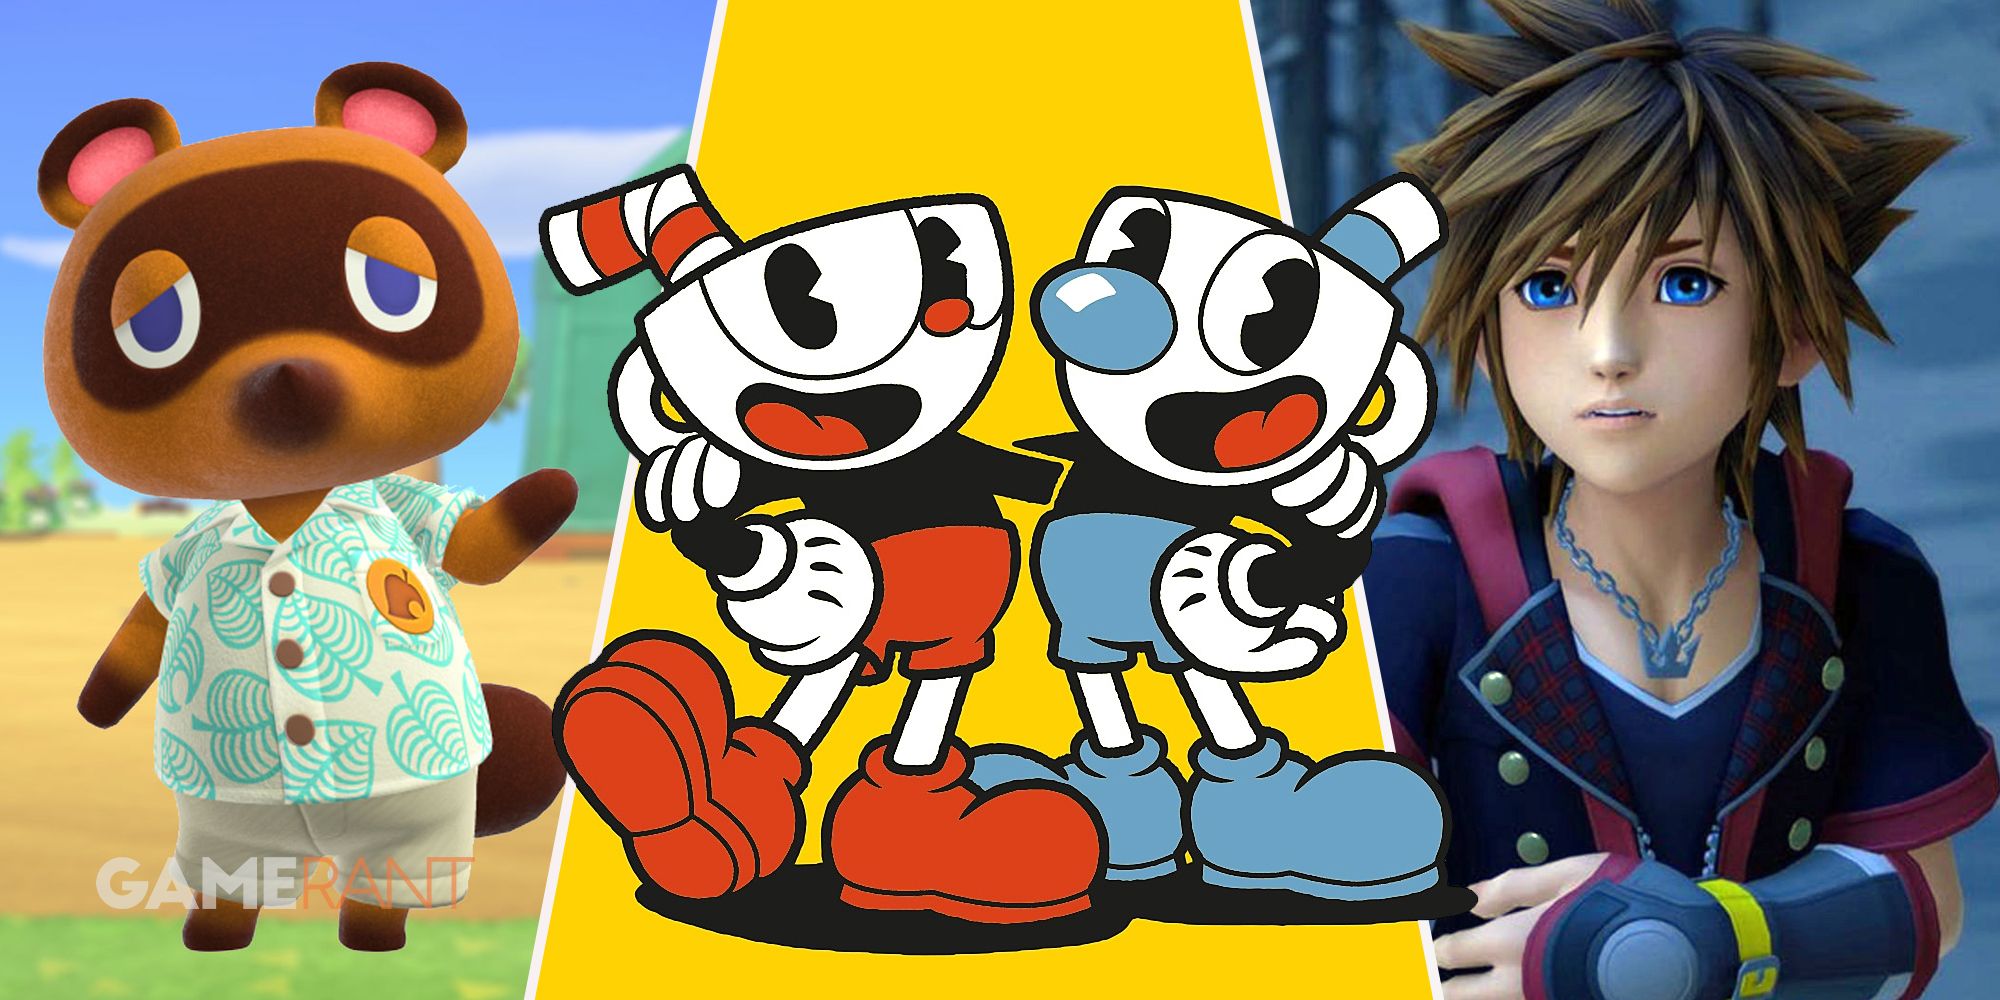 Том Нук из Animal Crossing машет рукой слева, персонажи Cuphead посередине, Сора из Kingdom Hearts справа